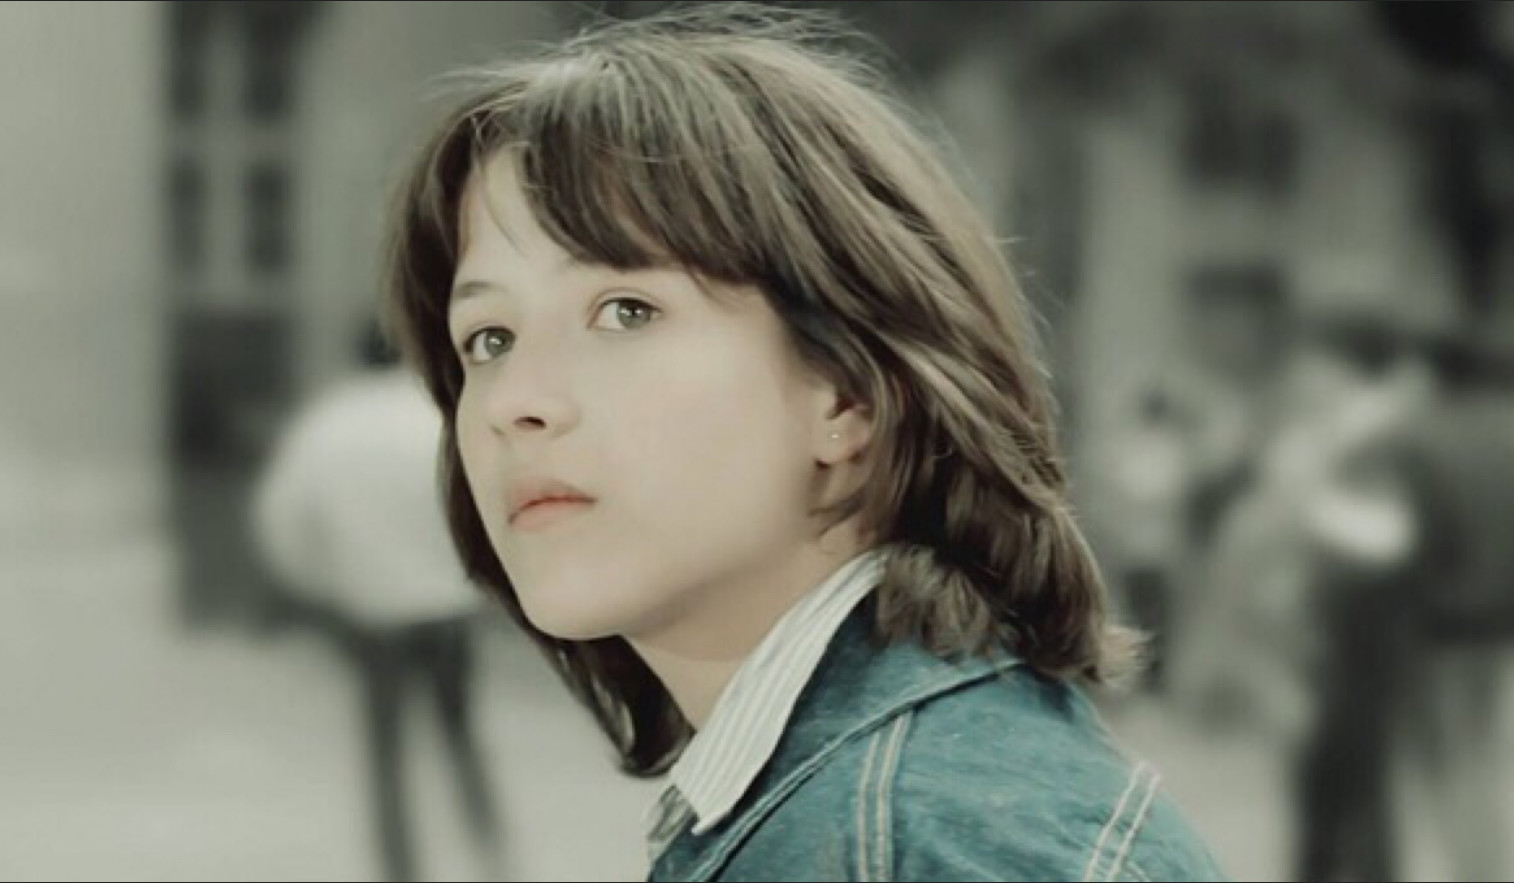 苏菲玛索是童星出道,在14岁的时候就出演了第一部电影《初吻》,并且在